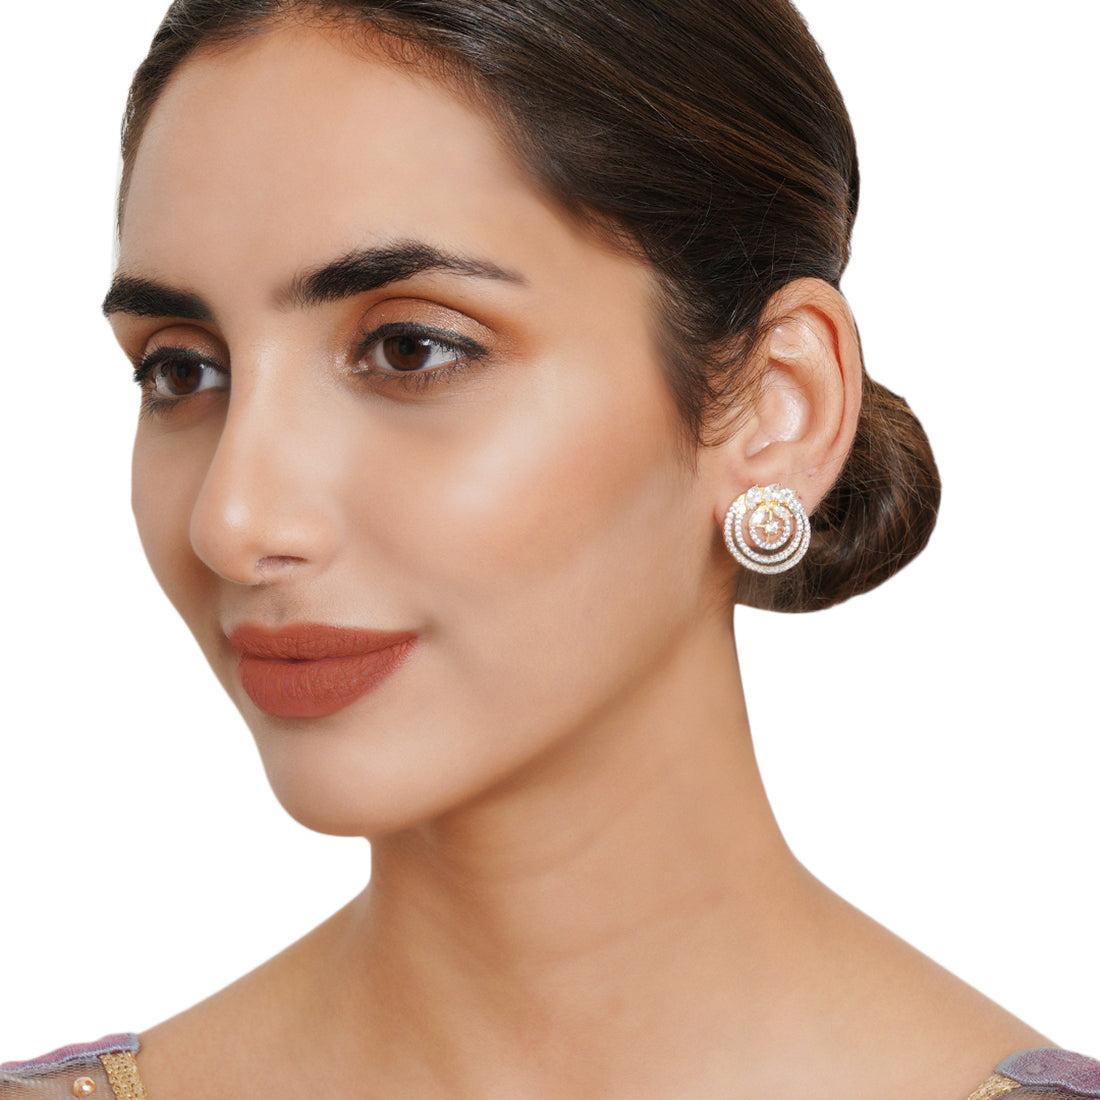 Spakling Essentials Chic Circular Stud Earrings